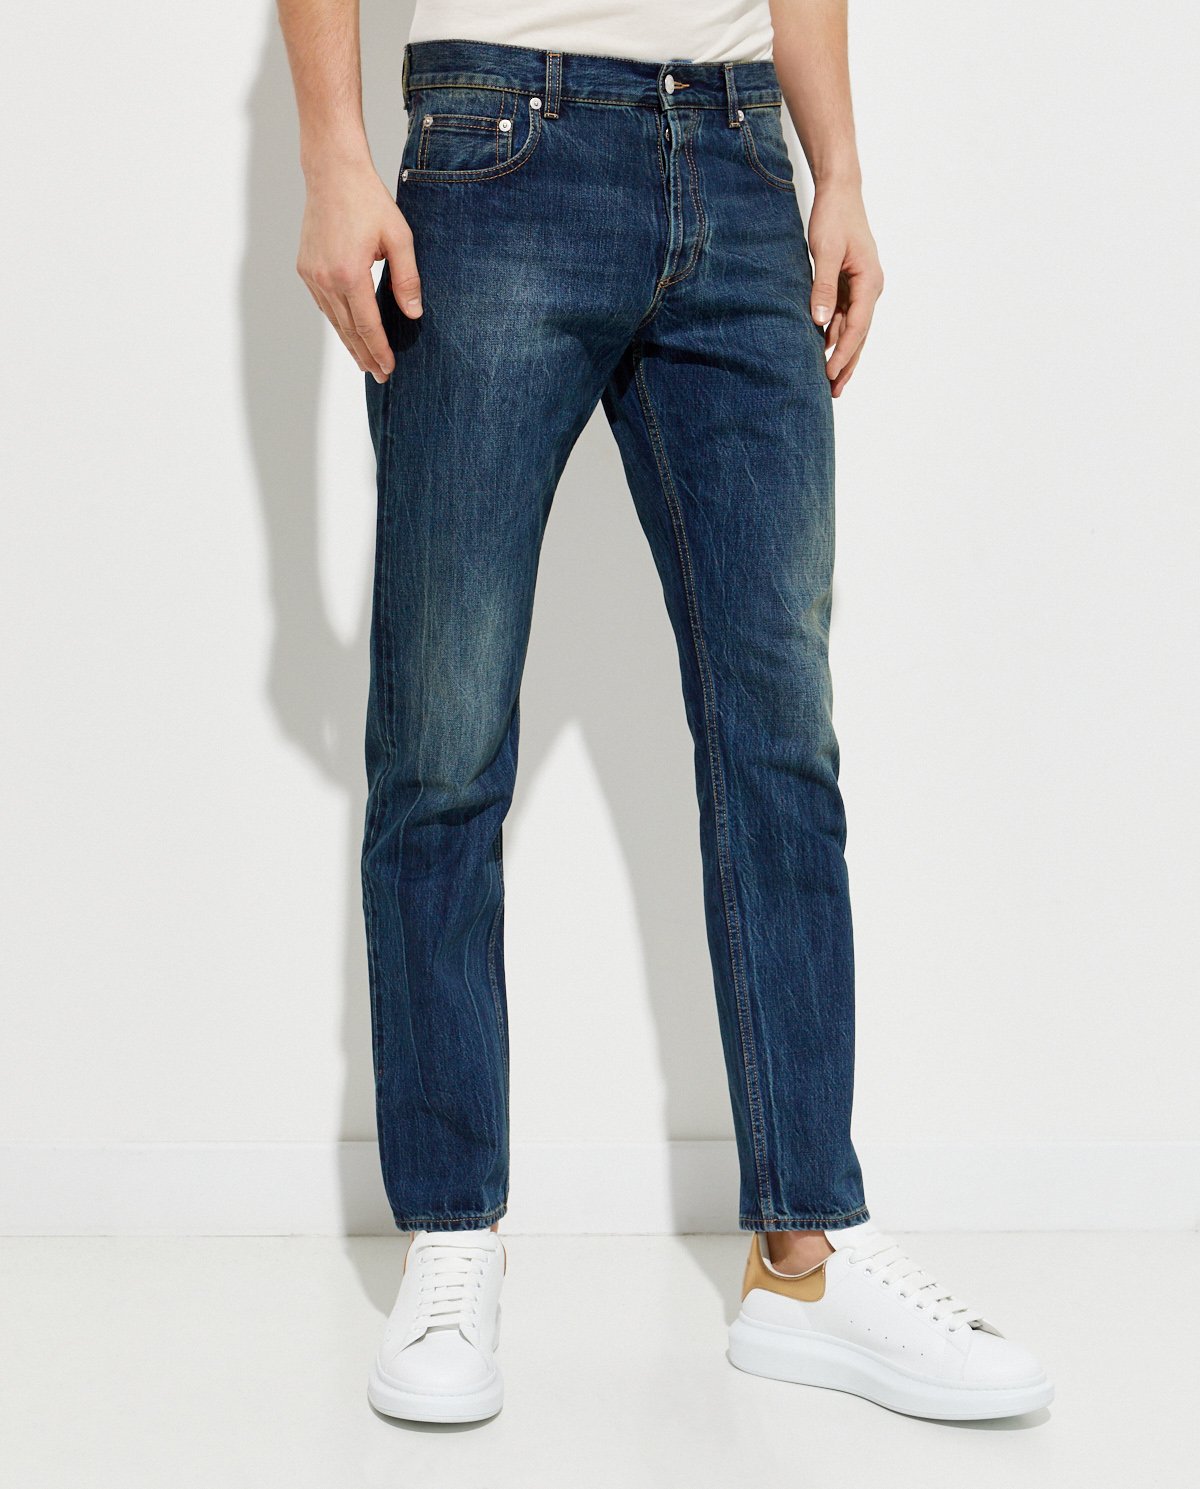 ALEXANDER MCQUEEN - Granatowe jeansy z przetarciami 625680 QQY79